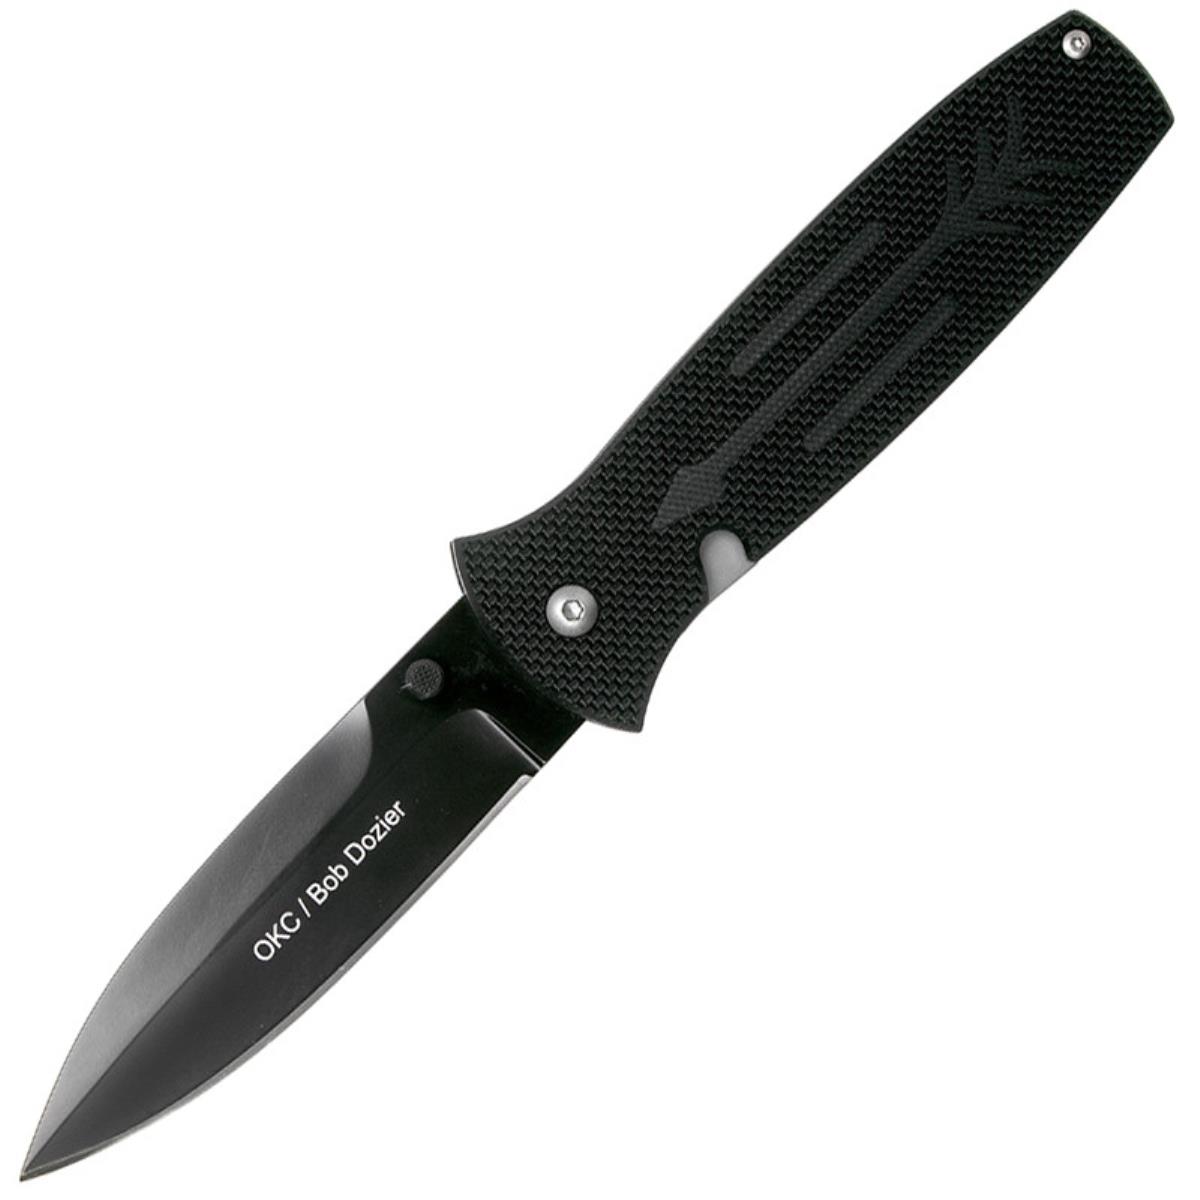 Нож OKC Dozier Arrow складн.,чёрная рукоять, G10, клинок D2, чёрное покрытие (9101)  ONTARIO нож carter trinity складн чёрная рукоять титан g10 клинок aus8 8877 ontario